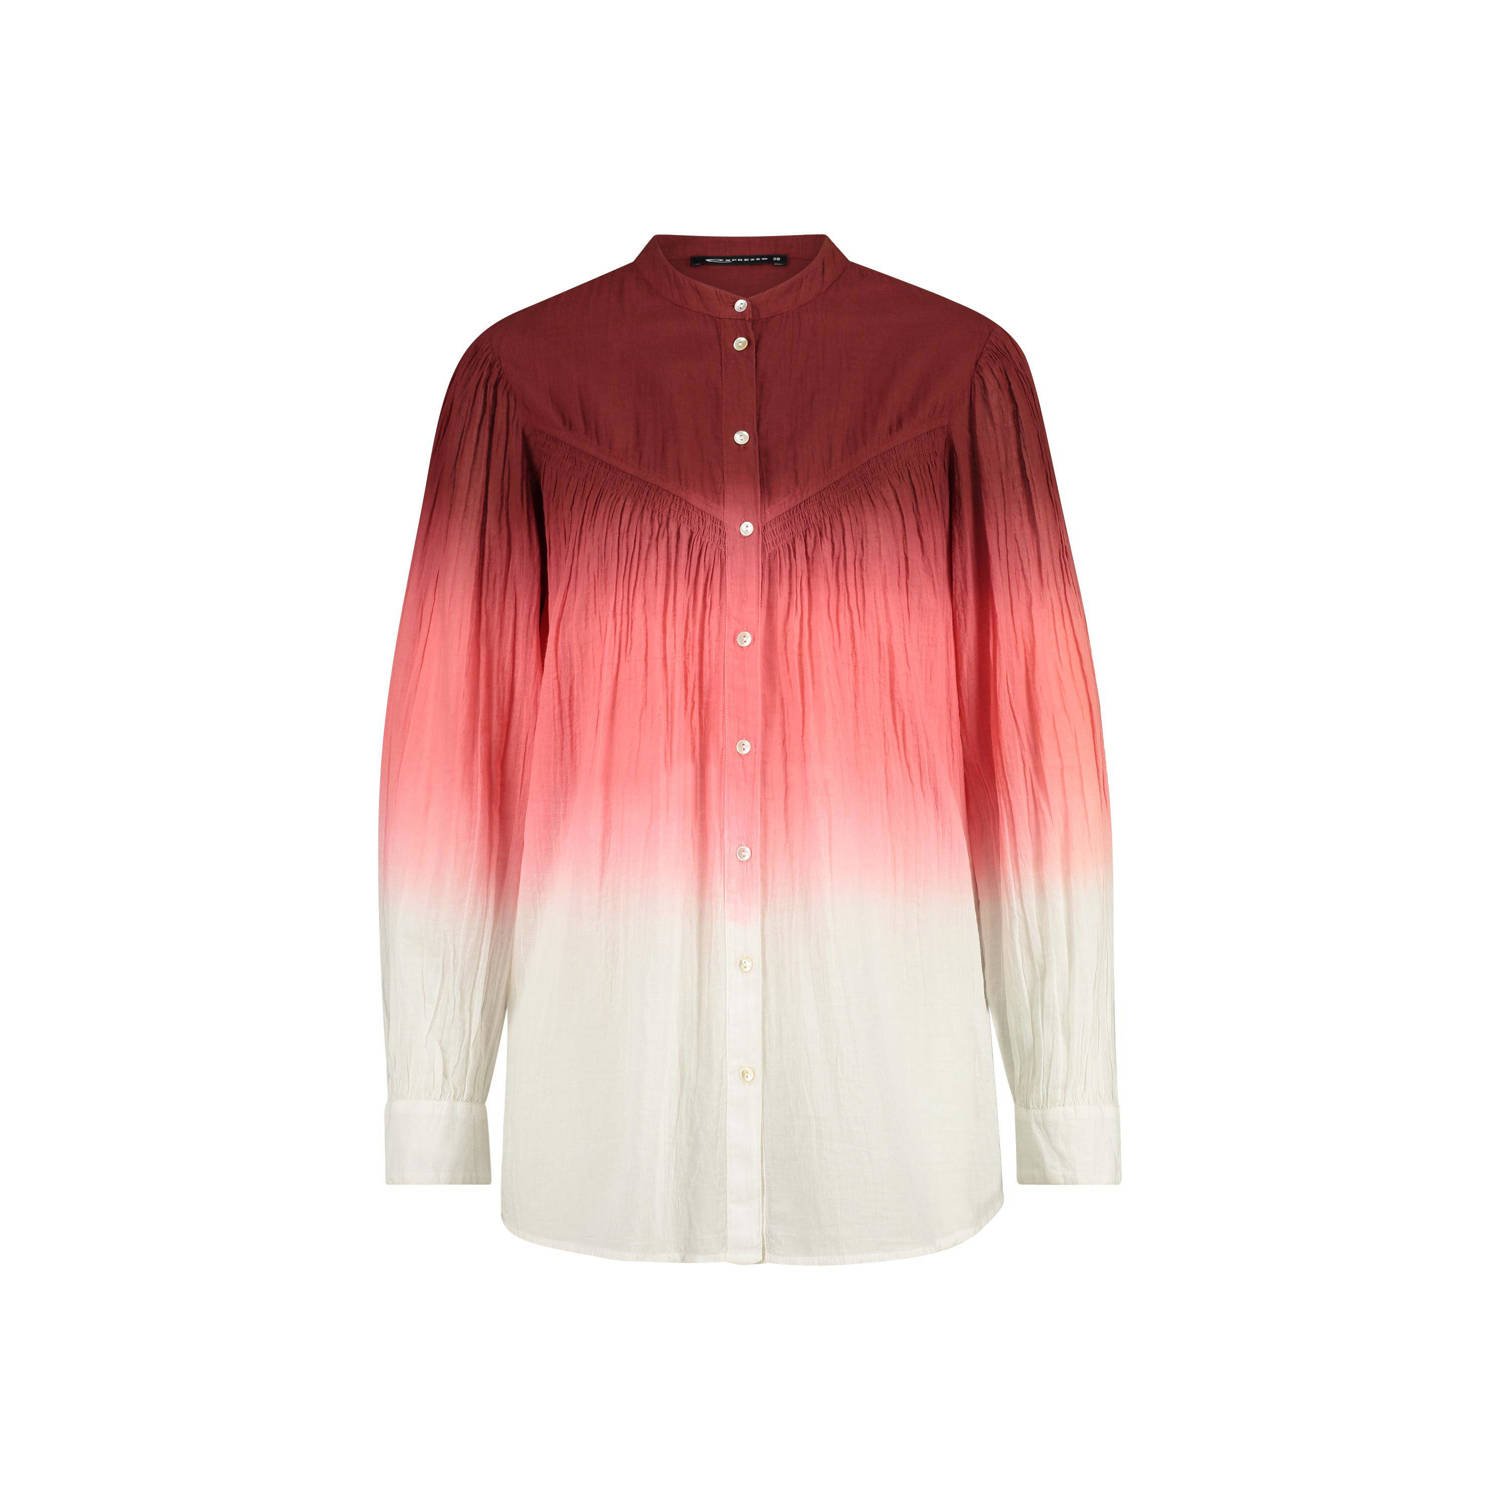 Expresso tie-dye blouse donkerrood roze ecru